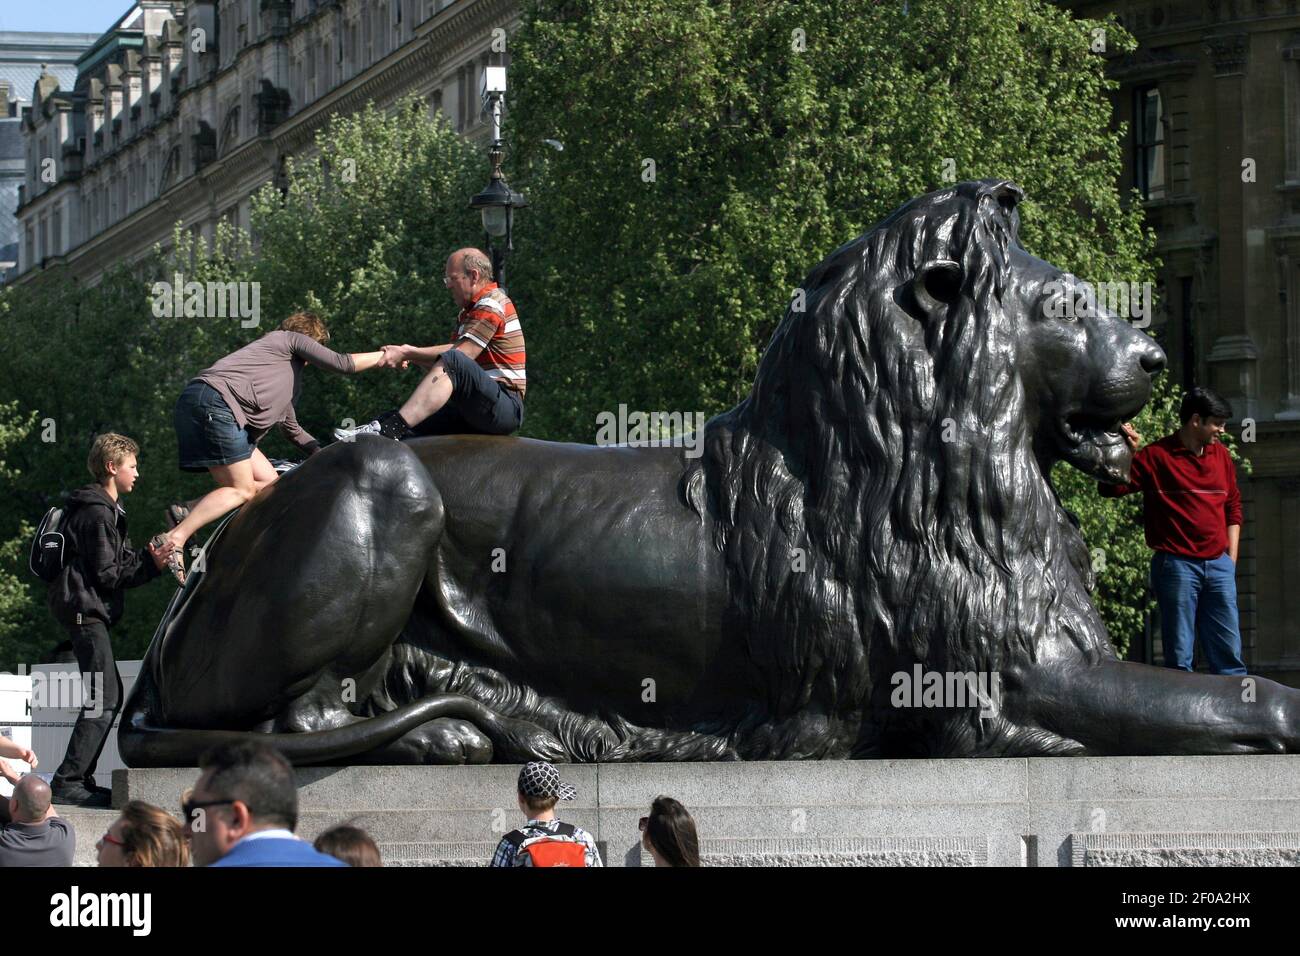 25 avril 2011. Londres, Angleterre. Les touristes se bousculent à bord des lions et posent pour prendre des photos à Trafalgar Square. Crédit photo: Charlie Varley/Sipa USA Banque D'Images